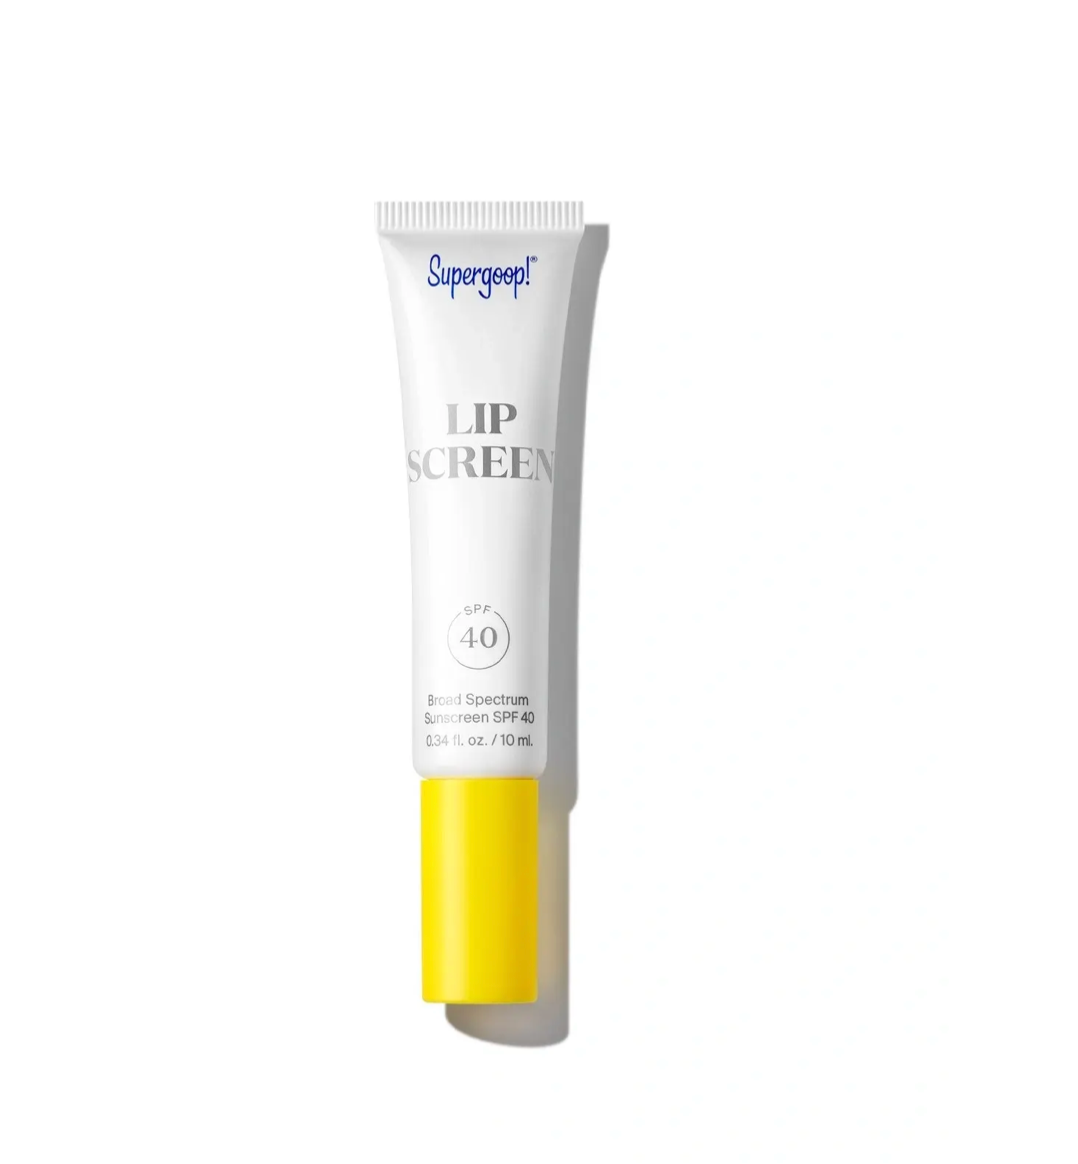 Lipscreen Shine SPF 40